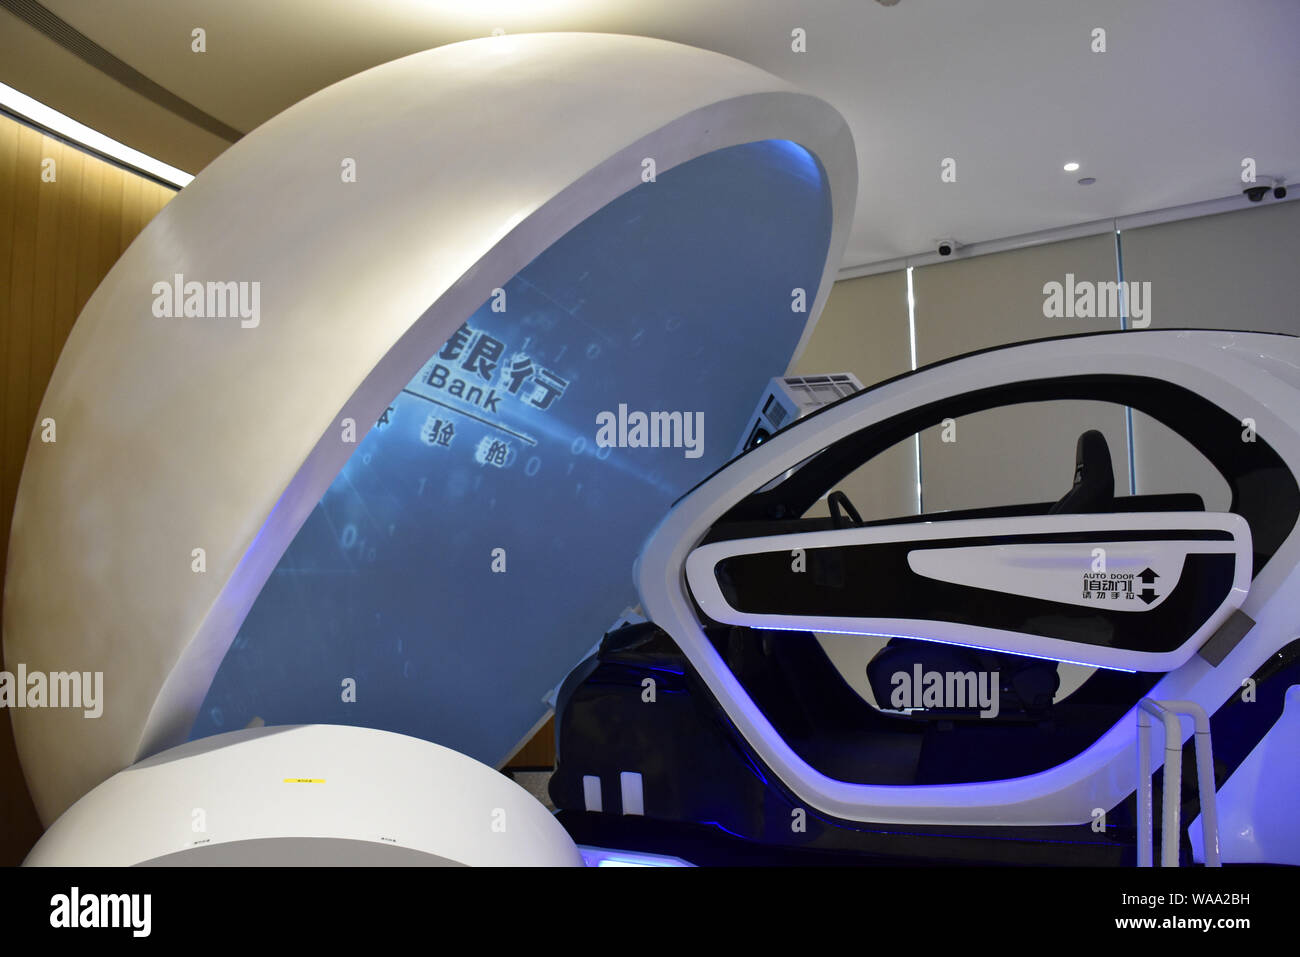 Ein simuliertes Fahren der Maschine wird an eine 5-G+ smart Bank angezeigt, Qinghuayuan Zweig der China Construction Bank (CCB), in Peking, China, 15. Juli 2019. Stockfoto